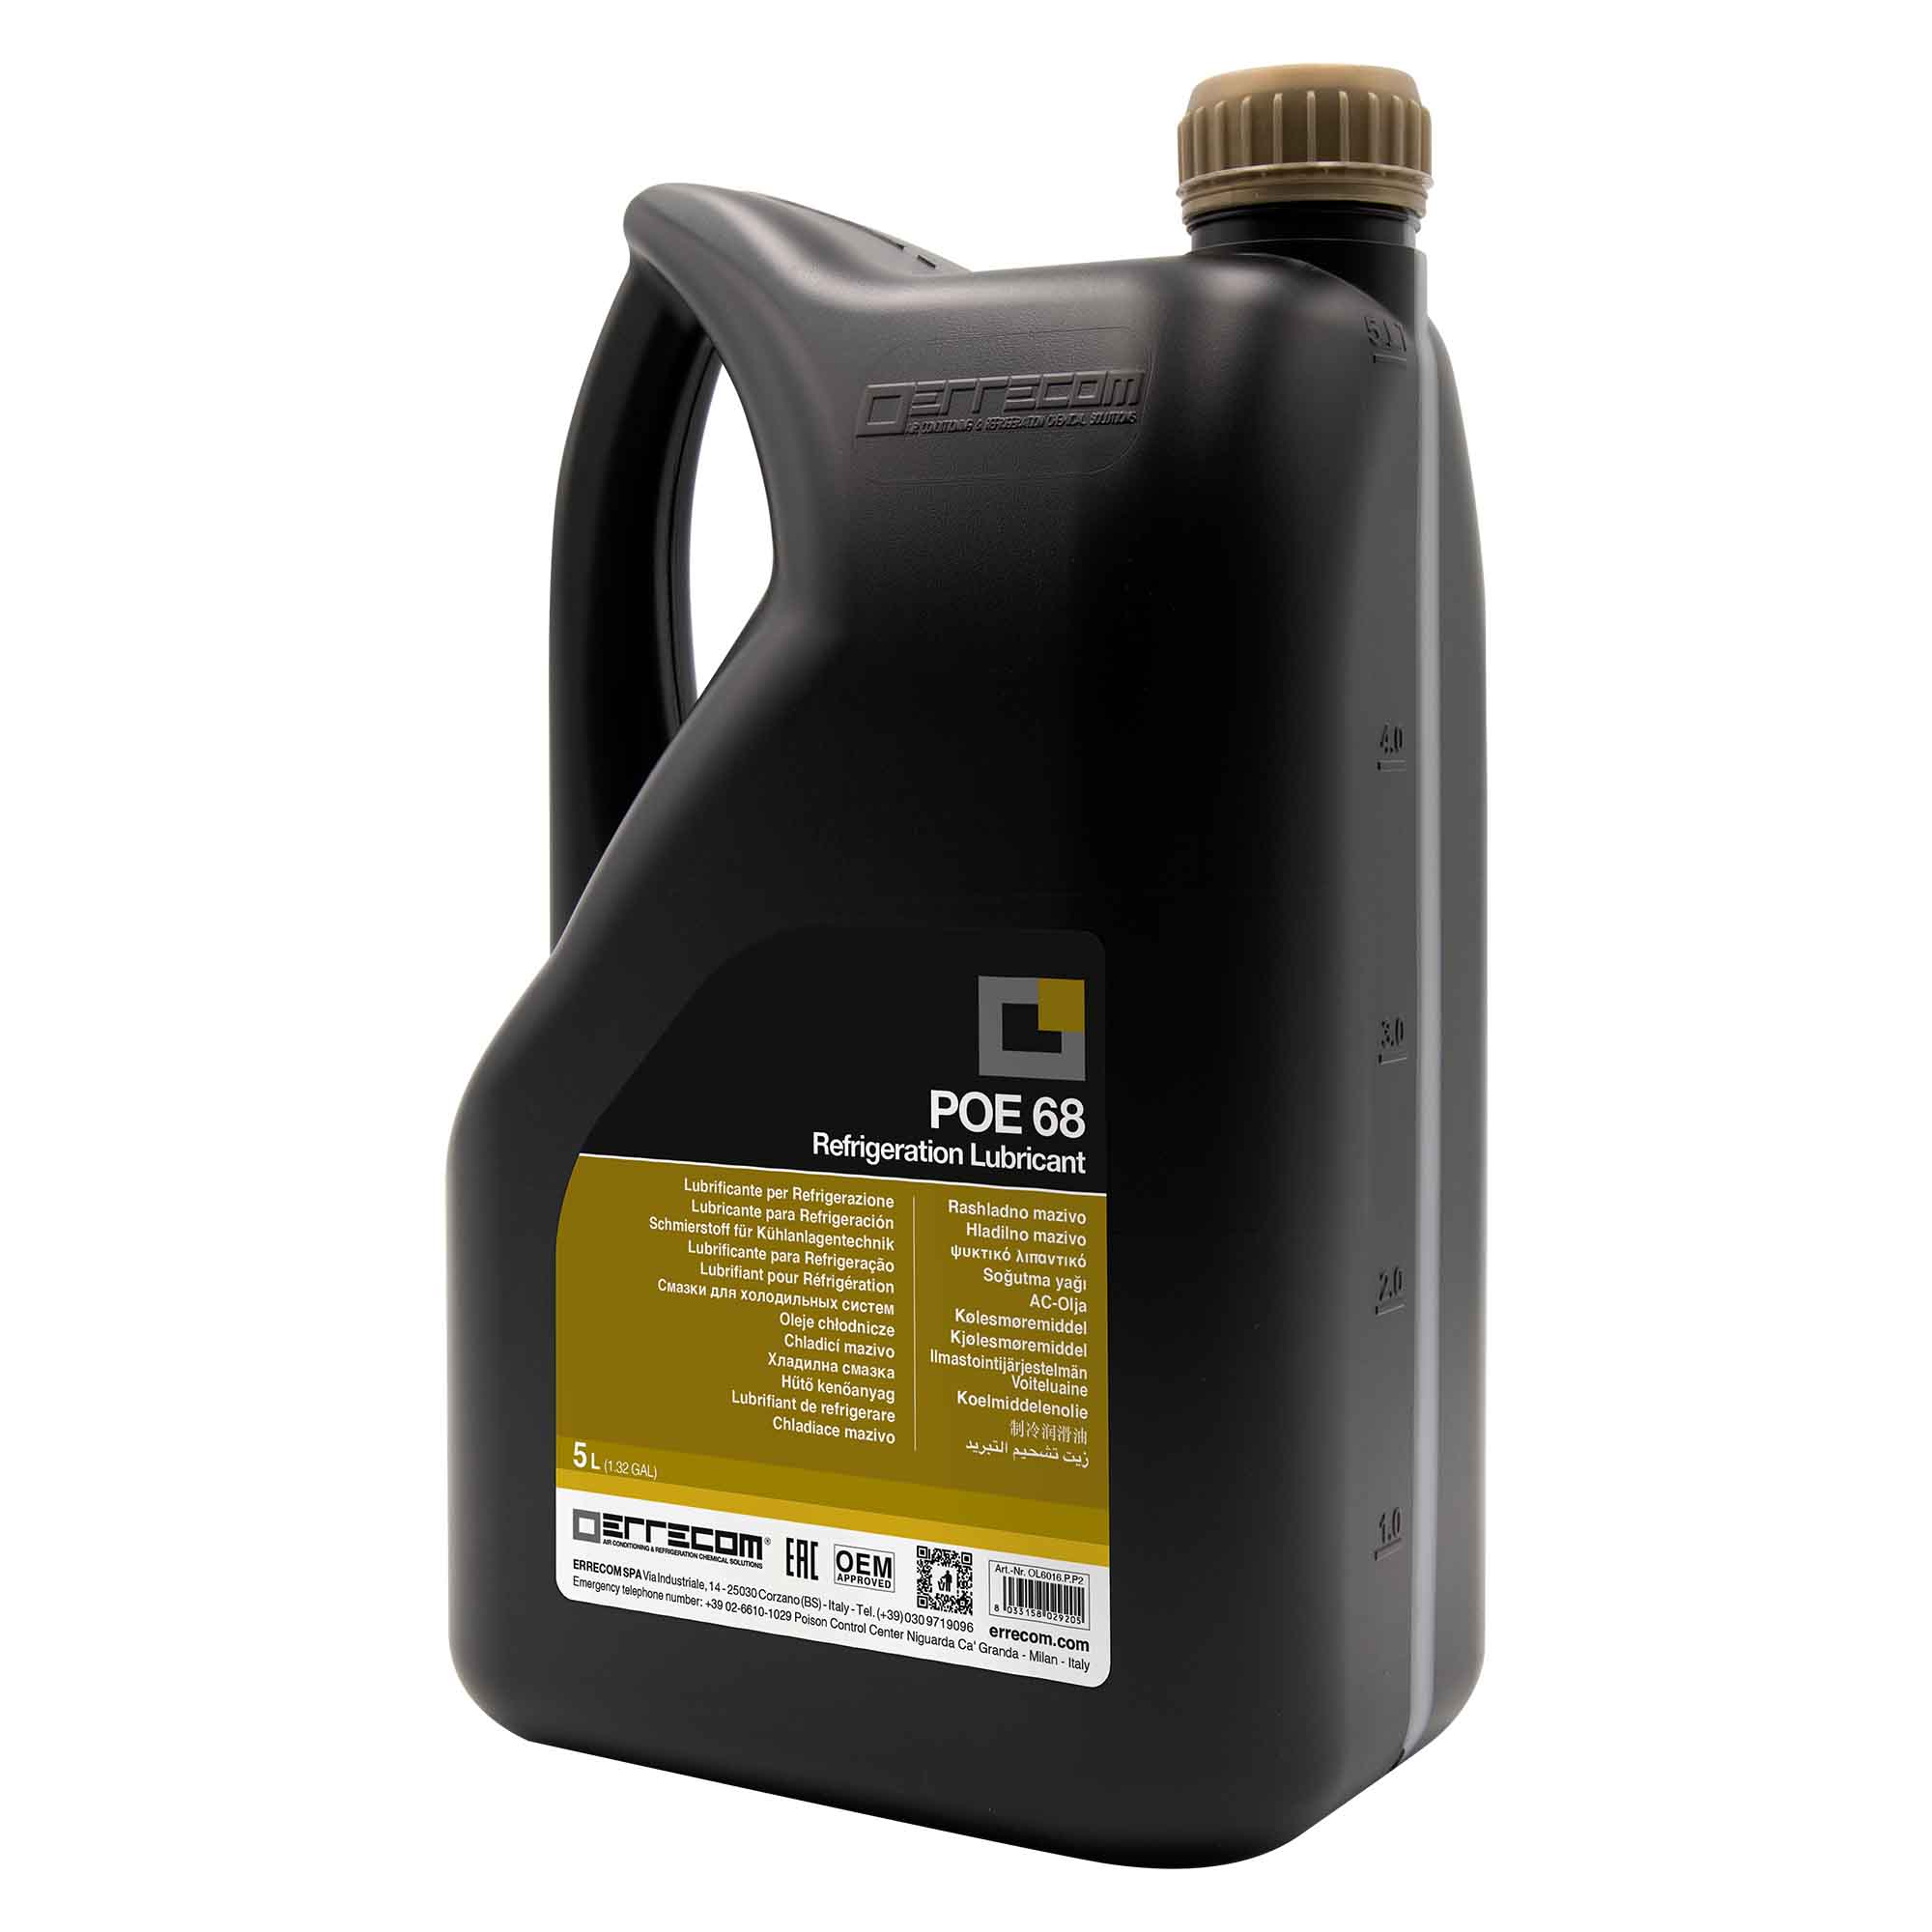 2 x Olio lubrificante R&AC Polyol Estere (POE) Errecom 68 - Tanica in Plastica da 5 lt. - Confezione n° 2 pz. (totale 10 litri)